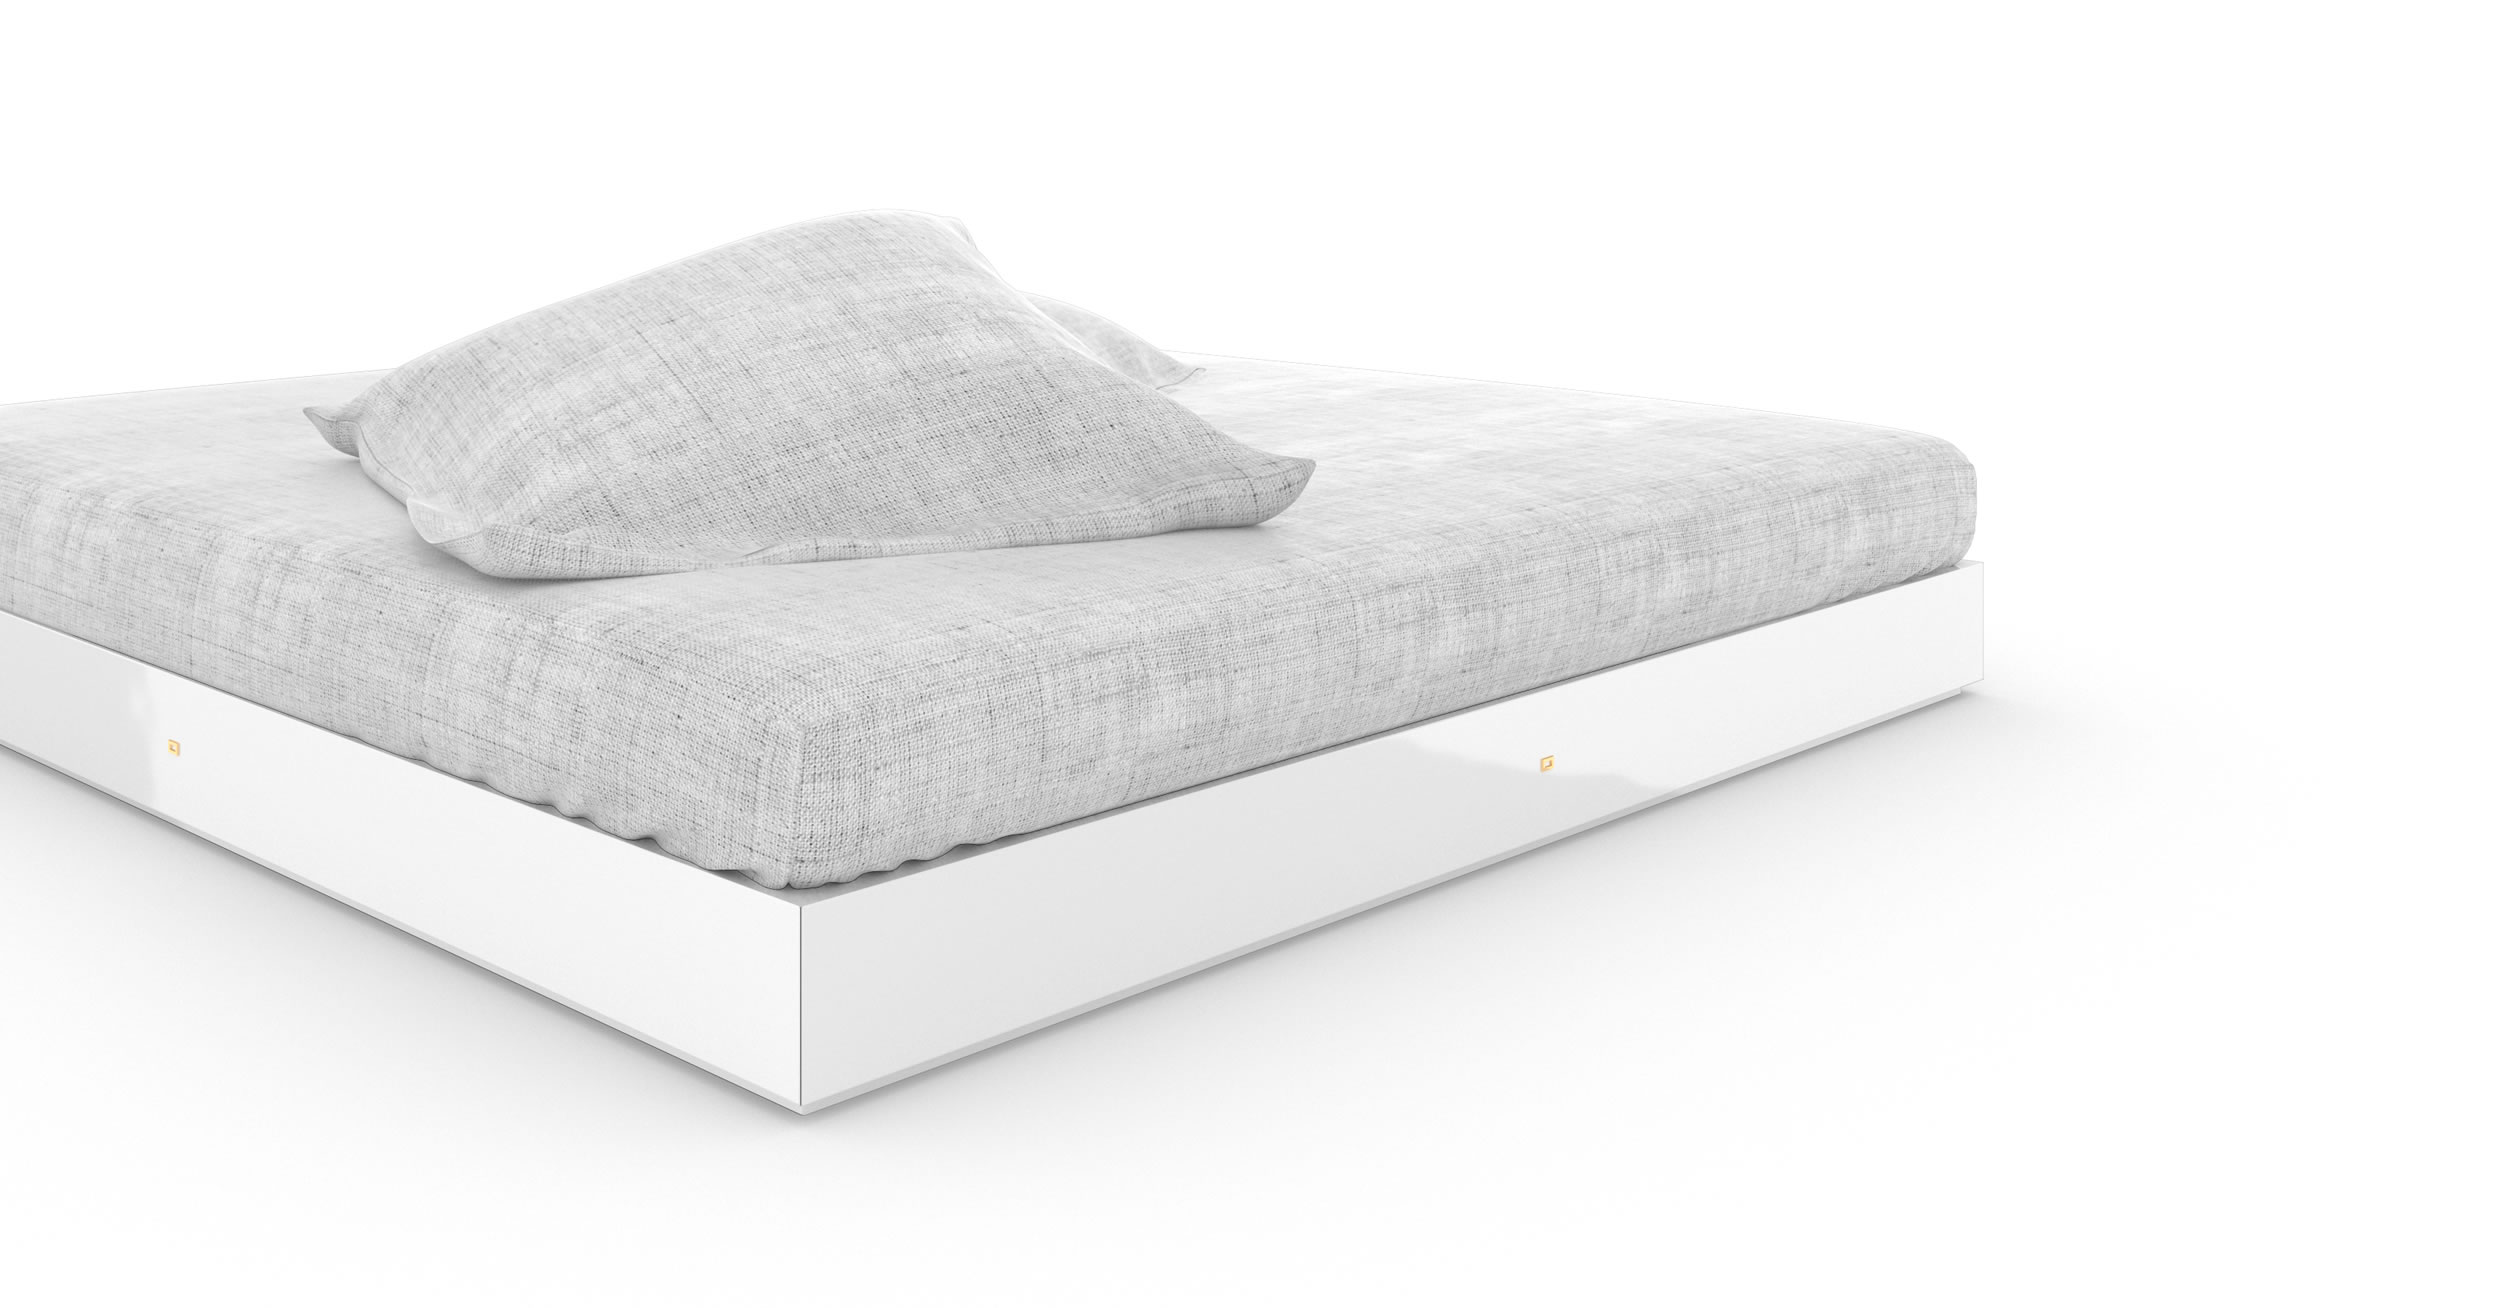 Design Bett Handgefertigt Weiss Glaenzend Premium Erlesen Design Elegant InteriorFELIX SCHWAKE